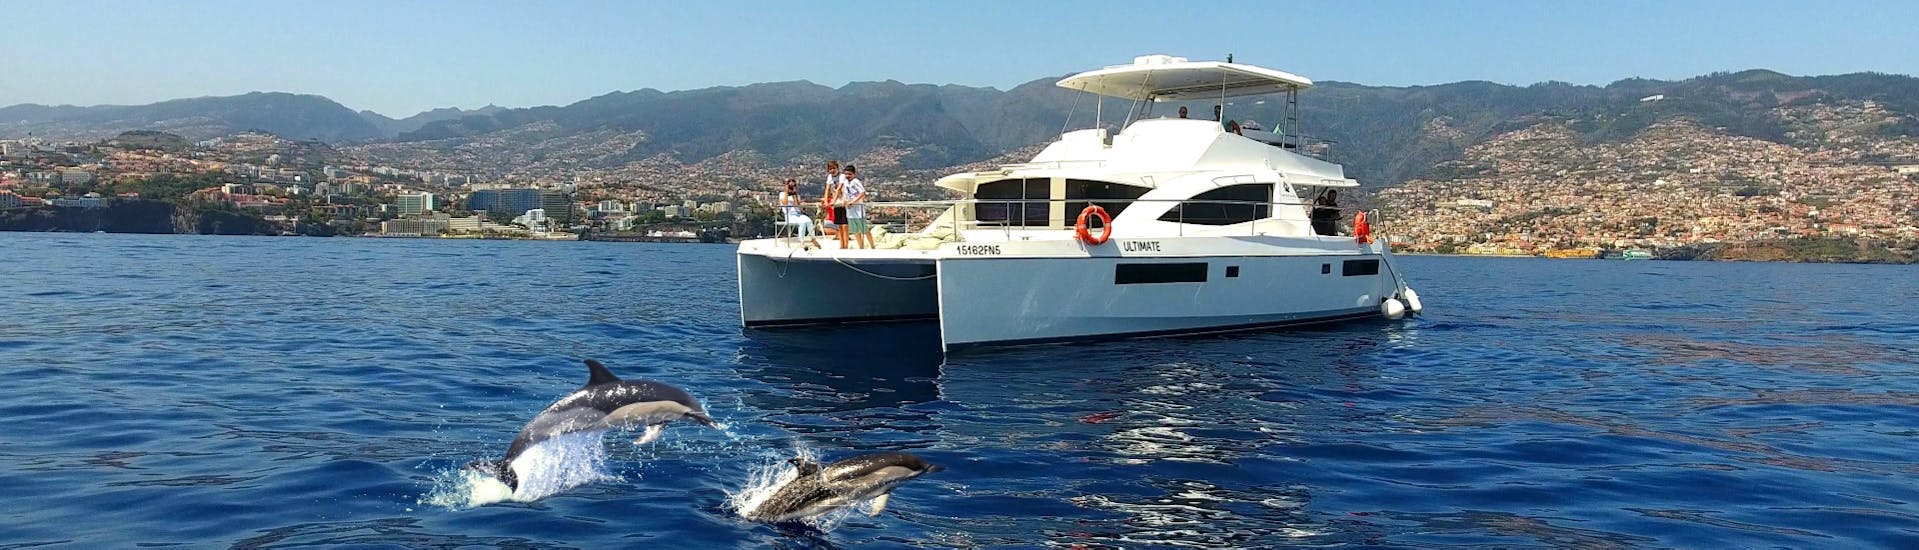 Gita in catamarano da Funchal con bagno in mare e osservazione della fauna selvatica.